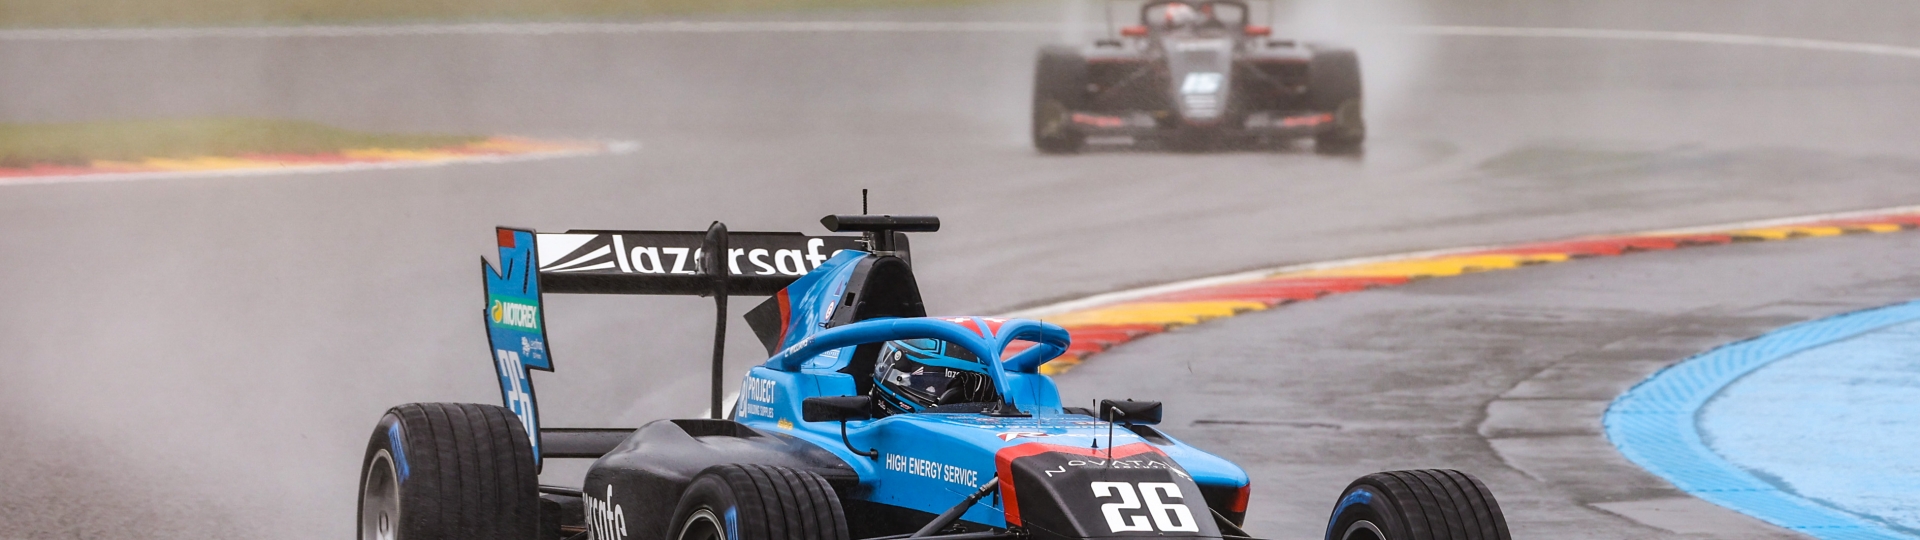 Calan Williams racing in wet weather